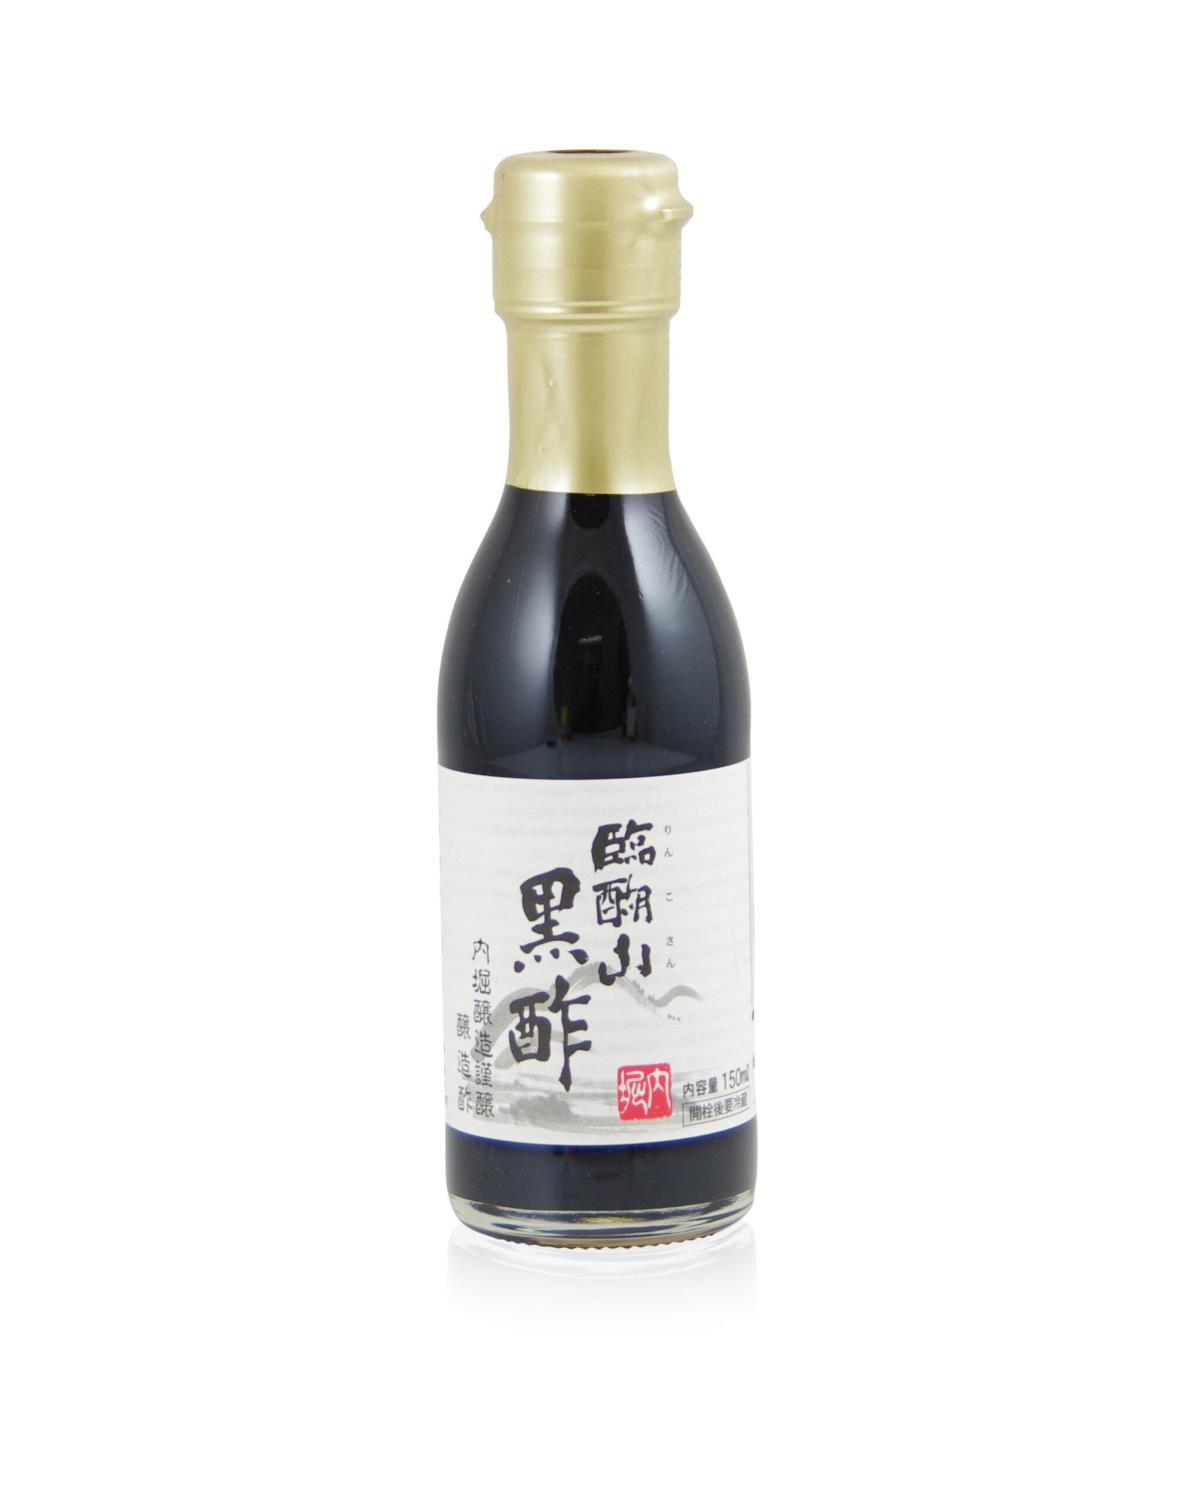 Kurosu, svart risedikk 150ml. Uchibori